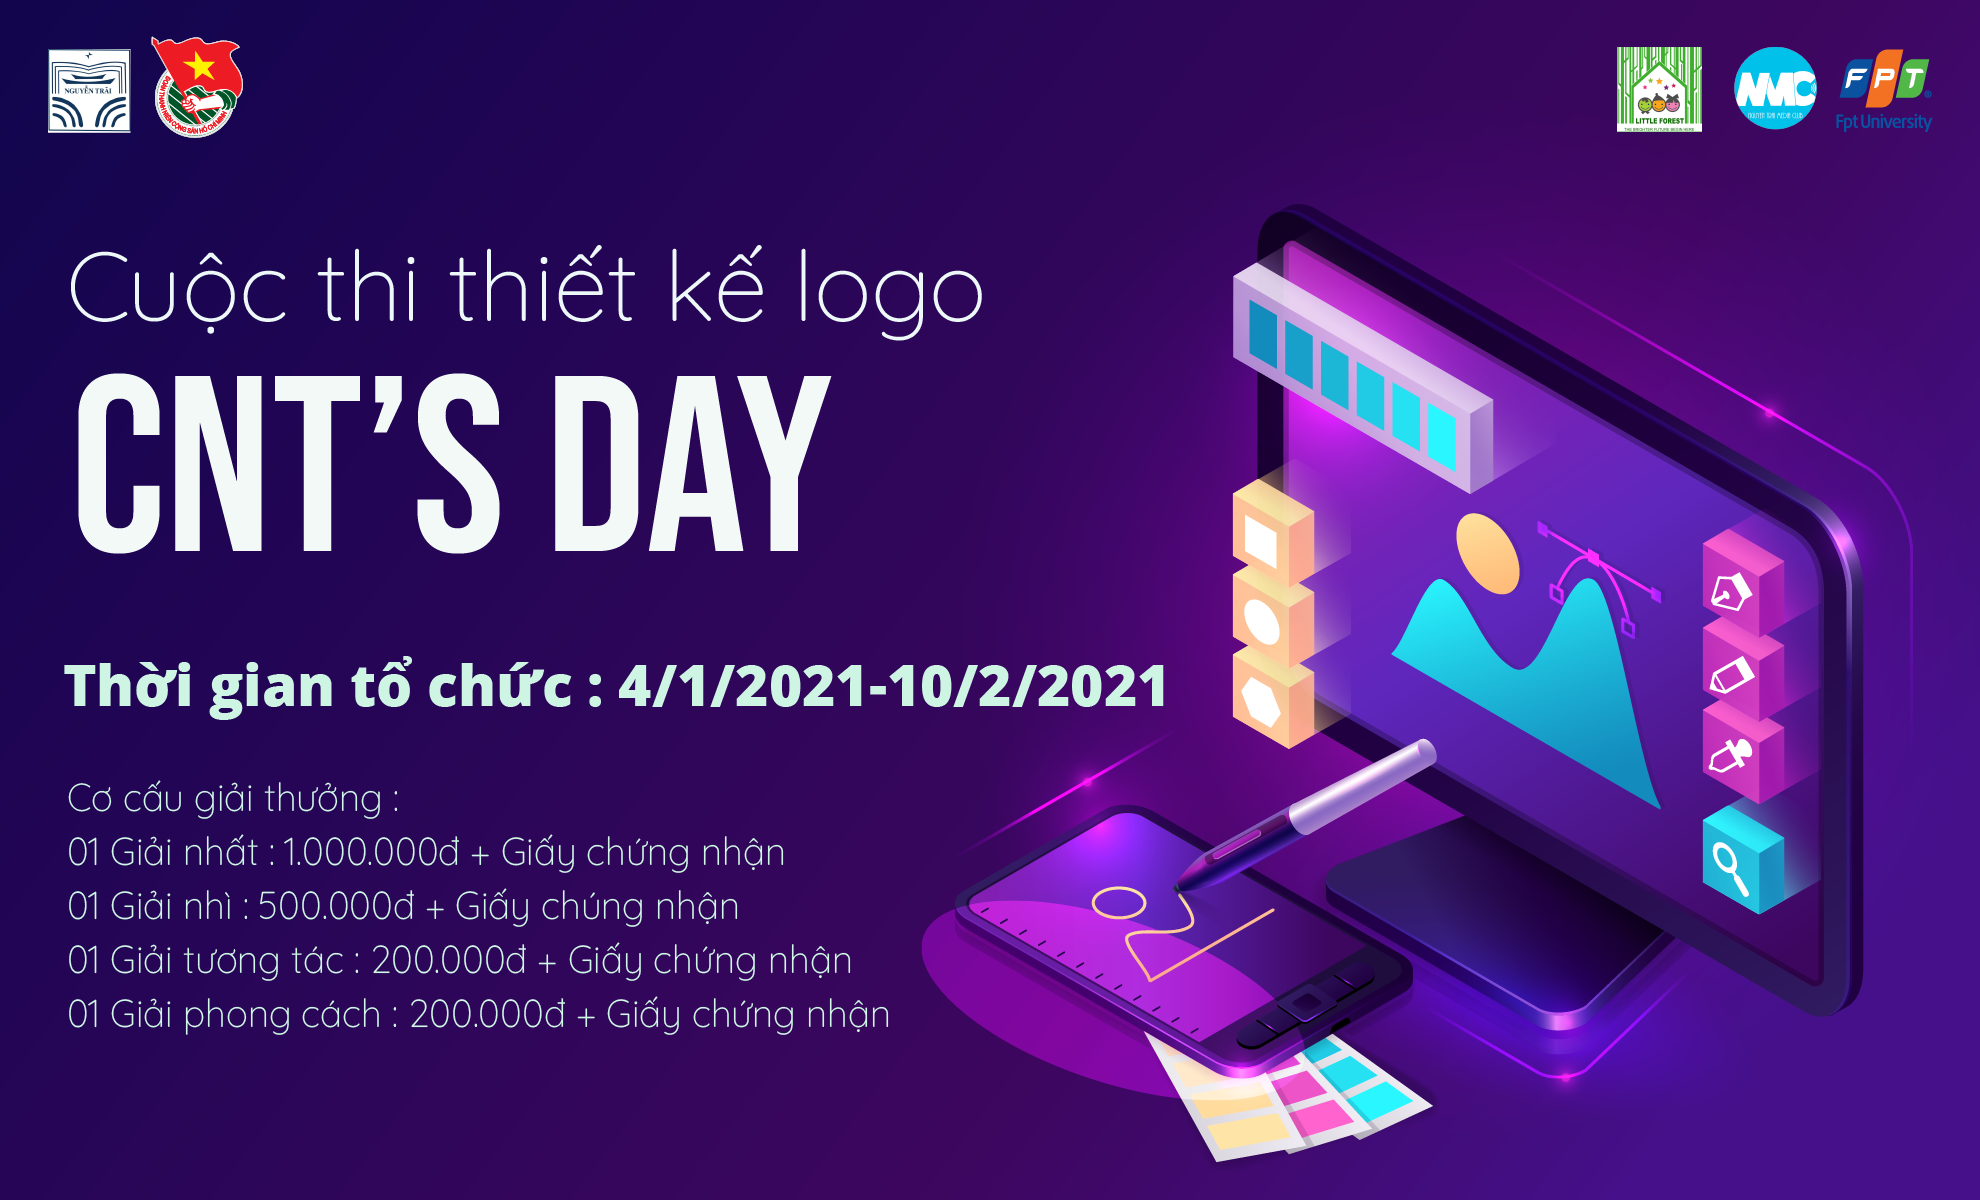 Tổng kết và công bố giải thưởng cuộc thi thiết kế logo ngày hội Chuyên Nguyễn Trãi “CNT’S DAY”